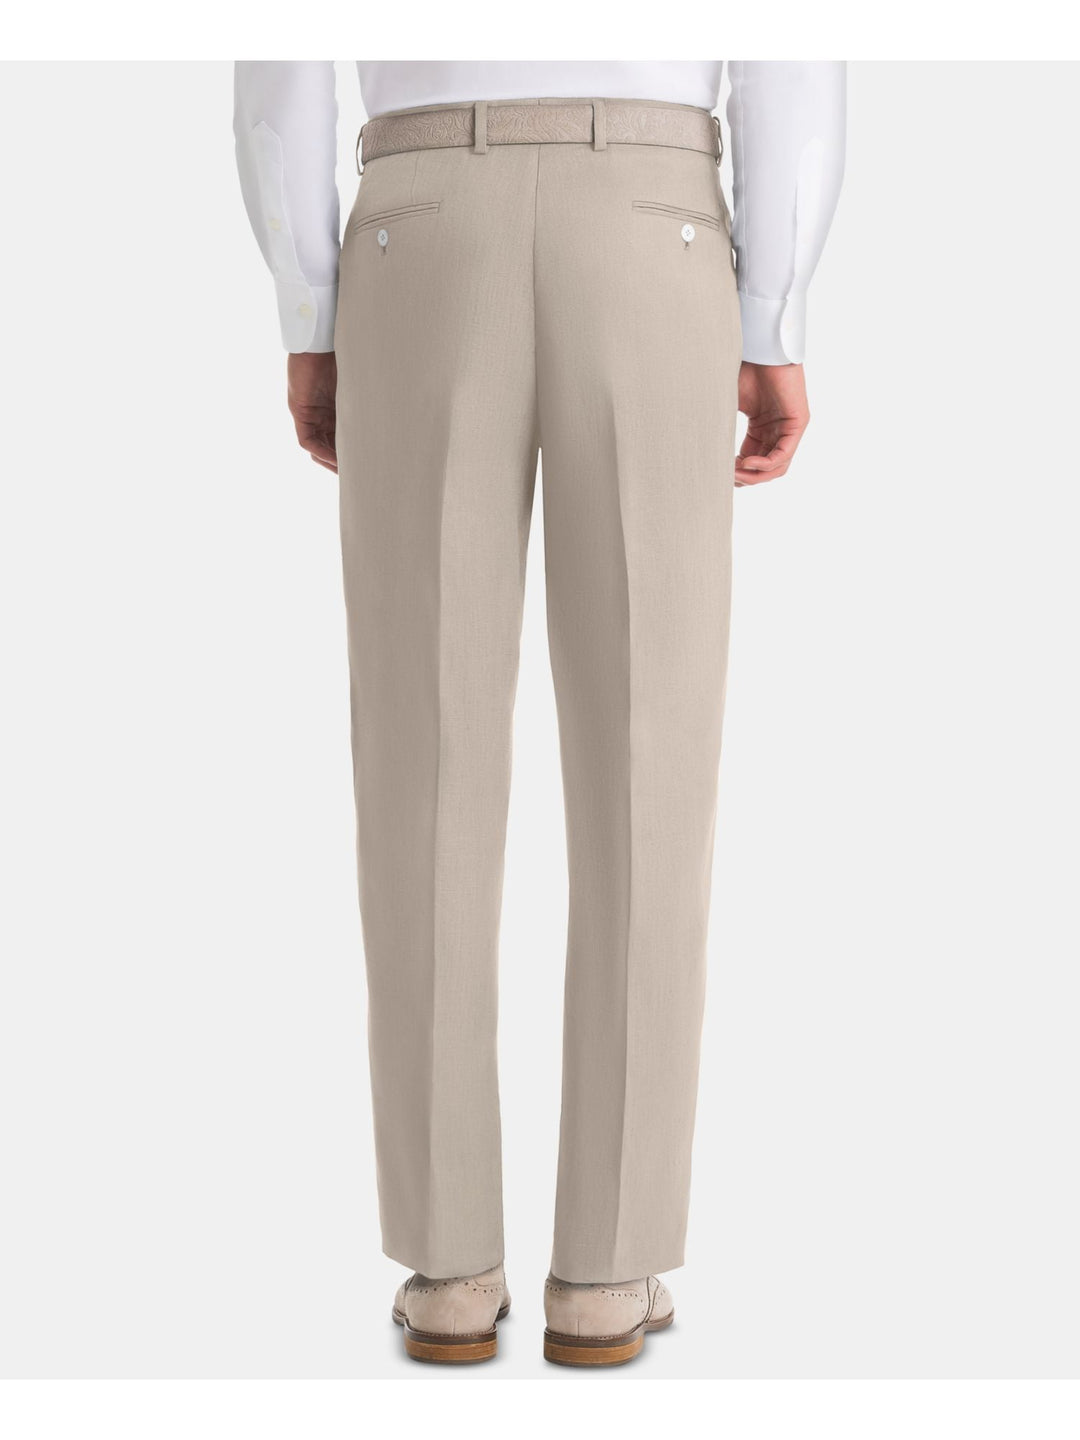 Ralph Lauren Men's Flat Front Classic Fit Pants Beige Size 33X32